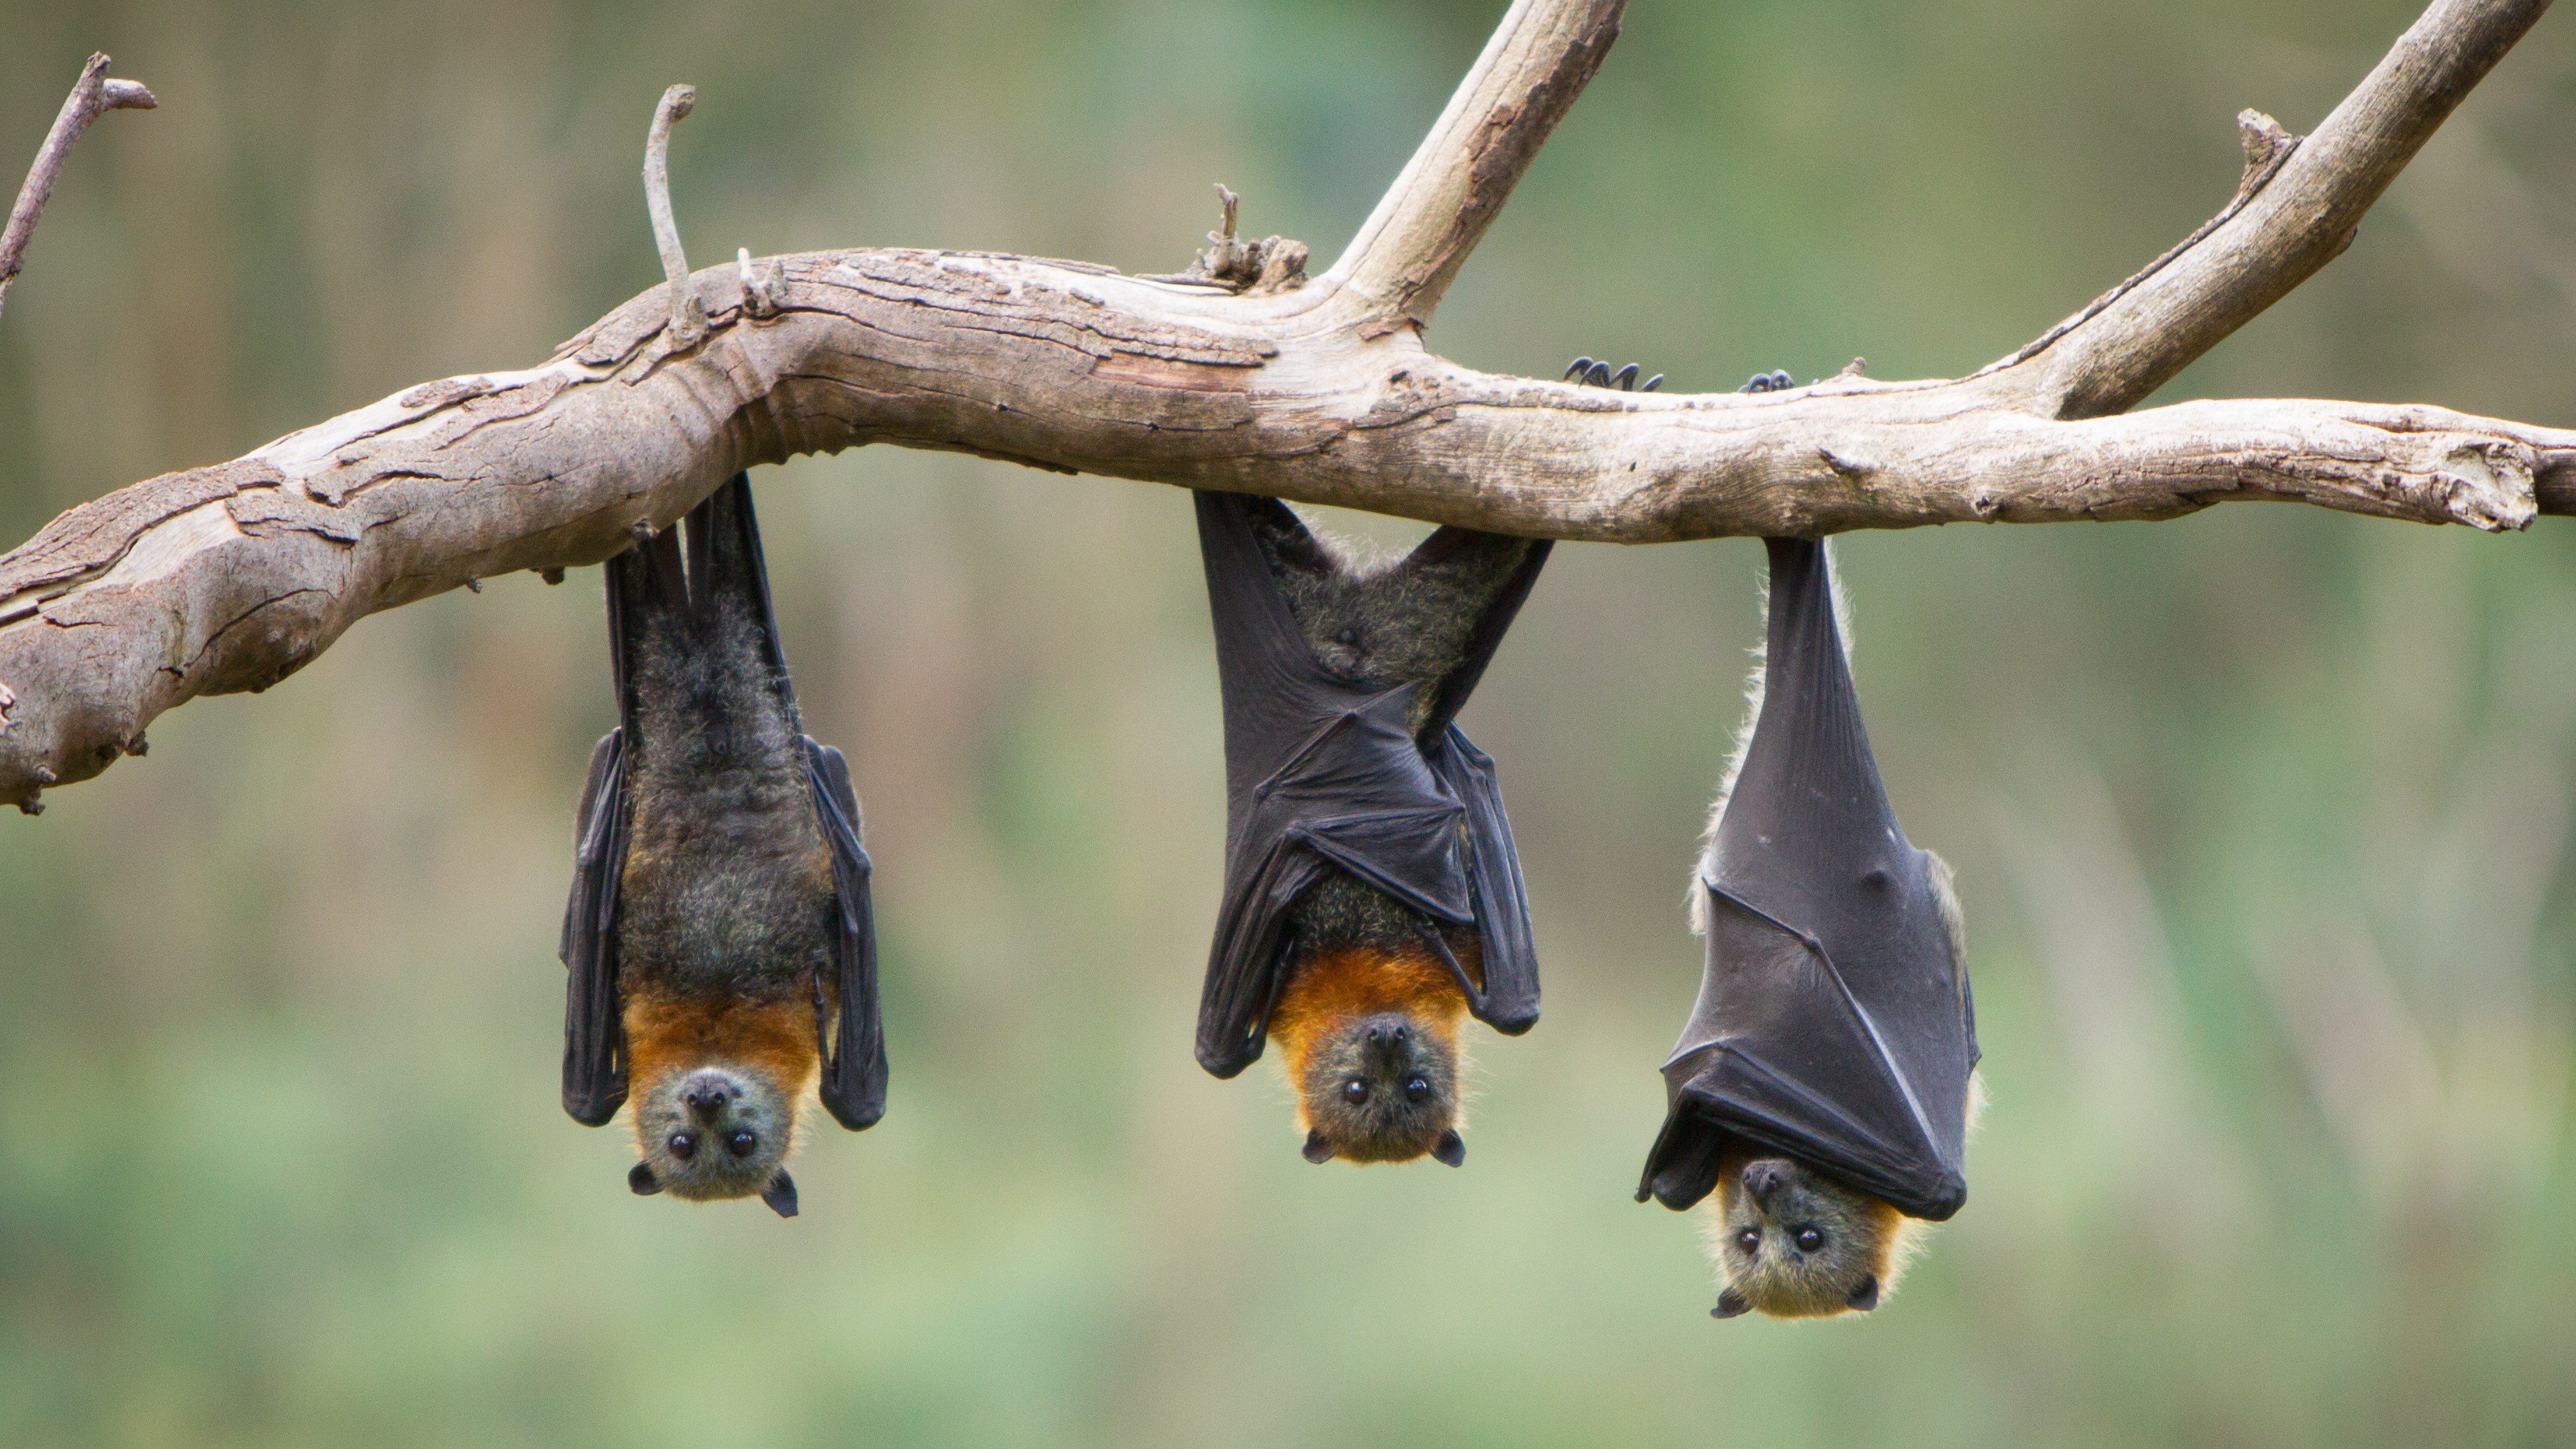 bats hang spooky branch